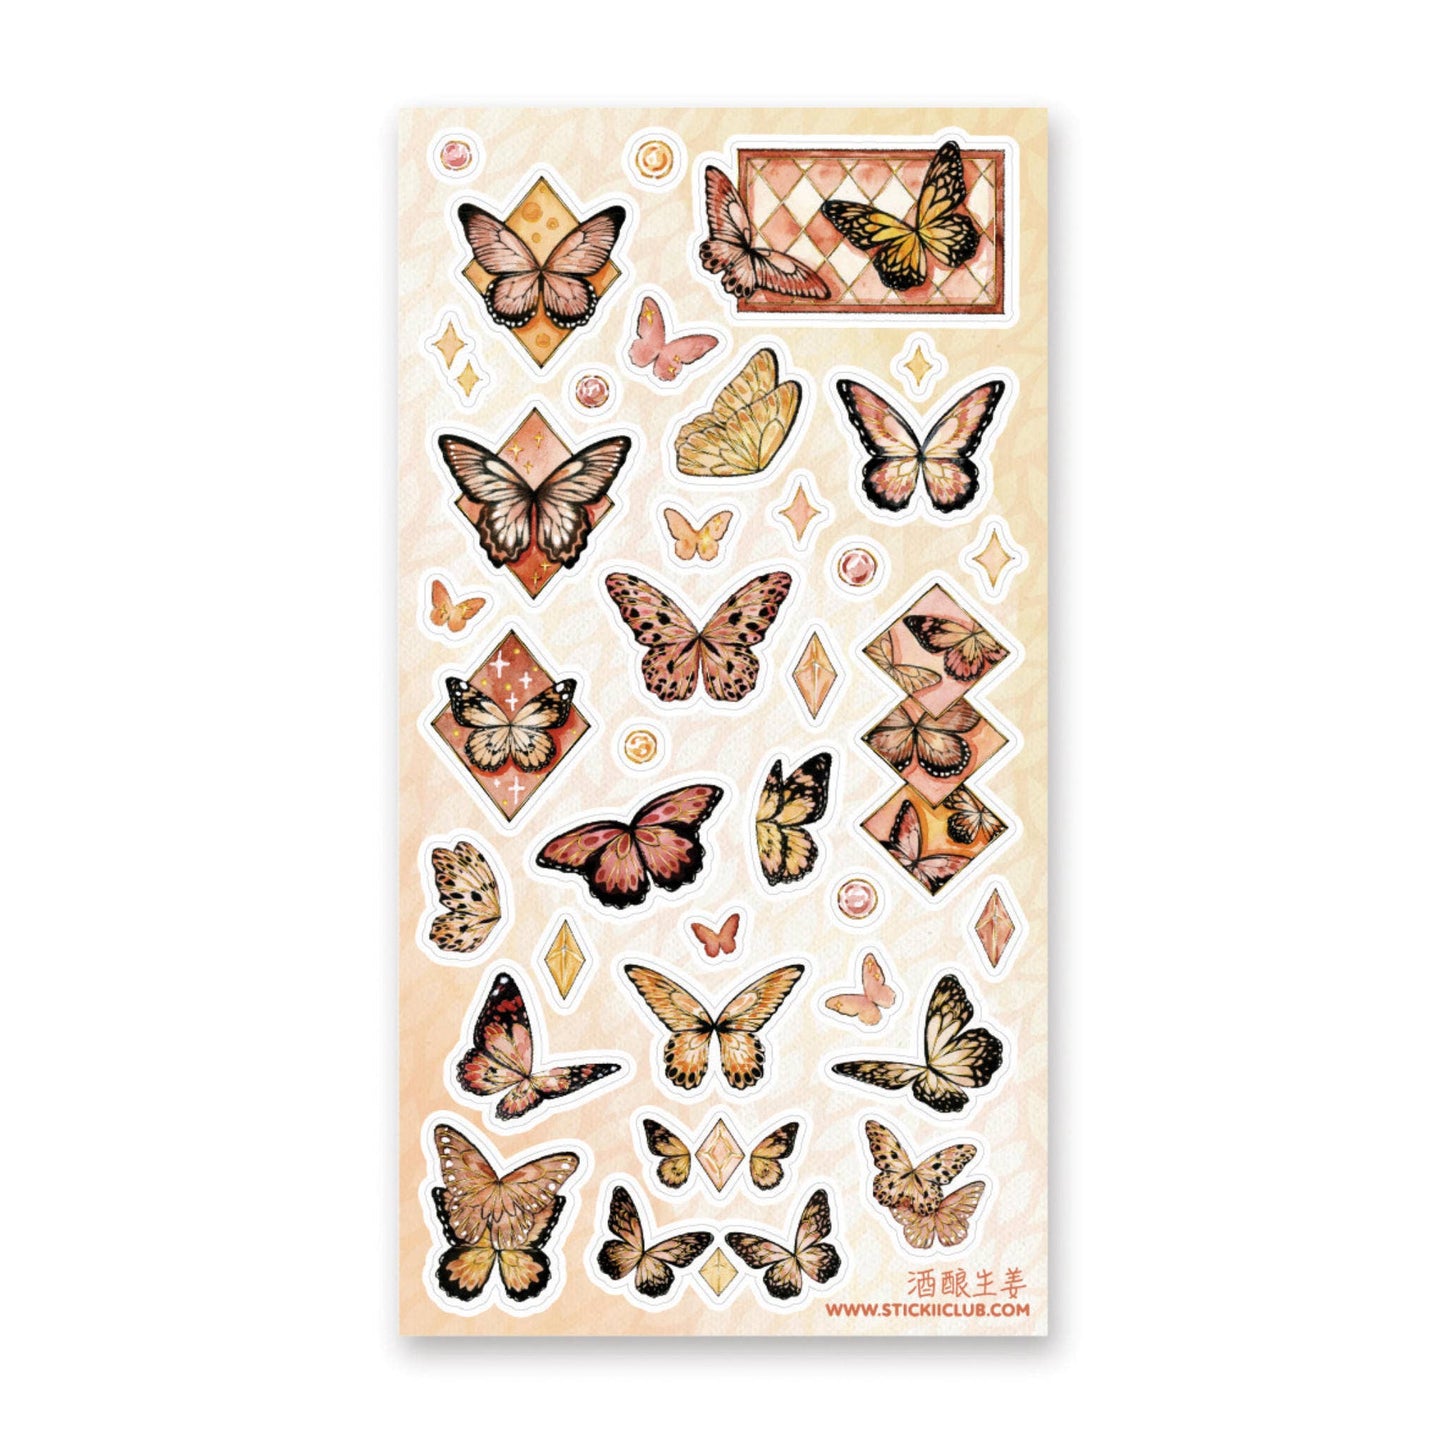 STICKII - Butterfly Beauties Sticker Sheet